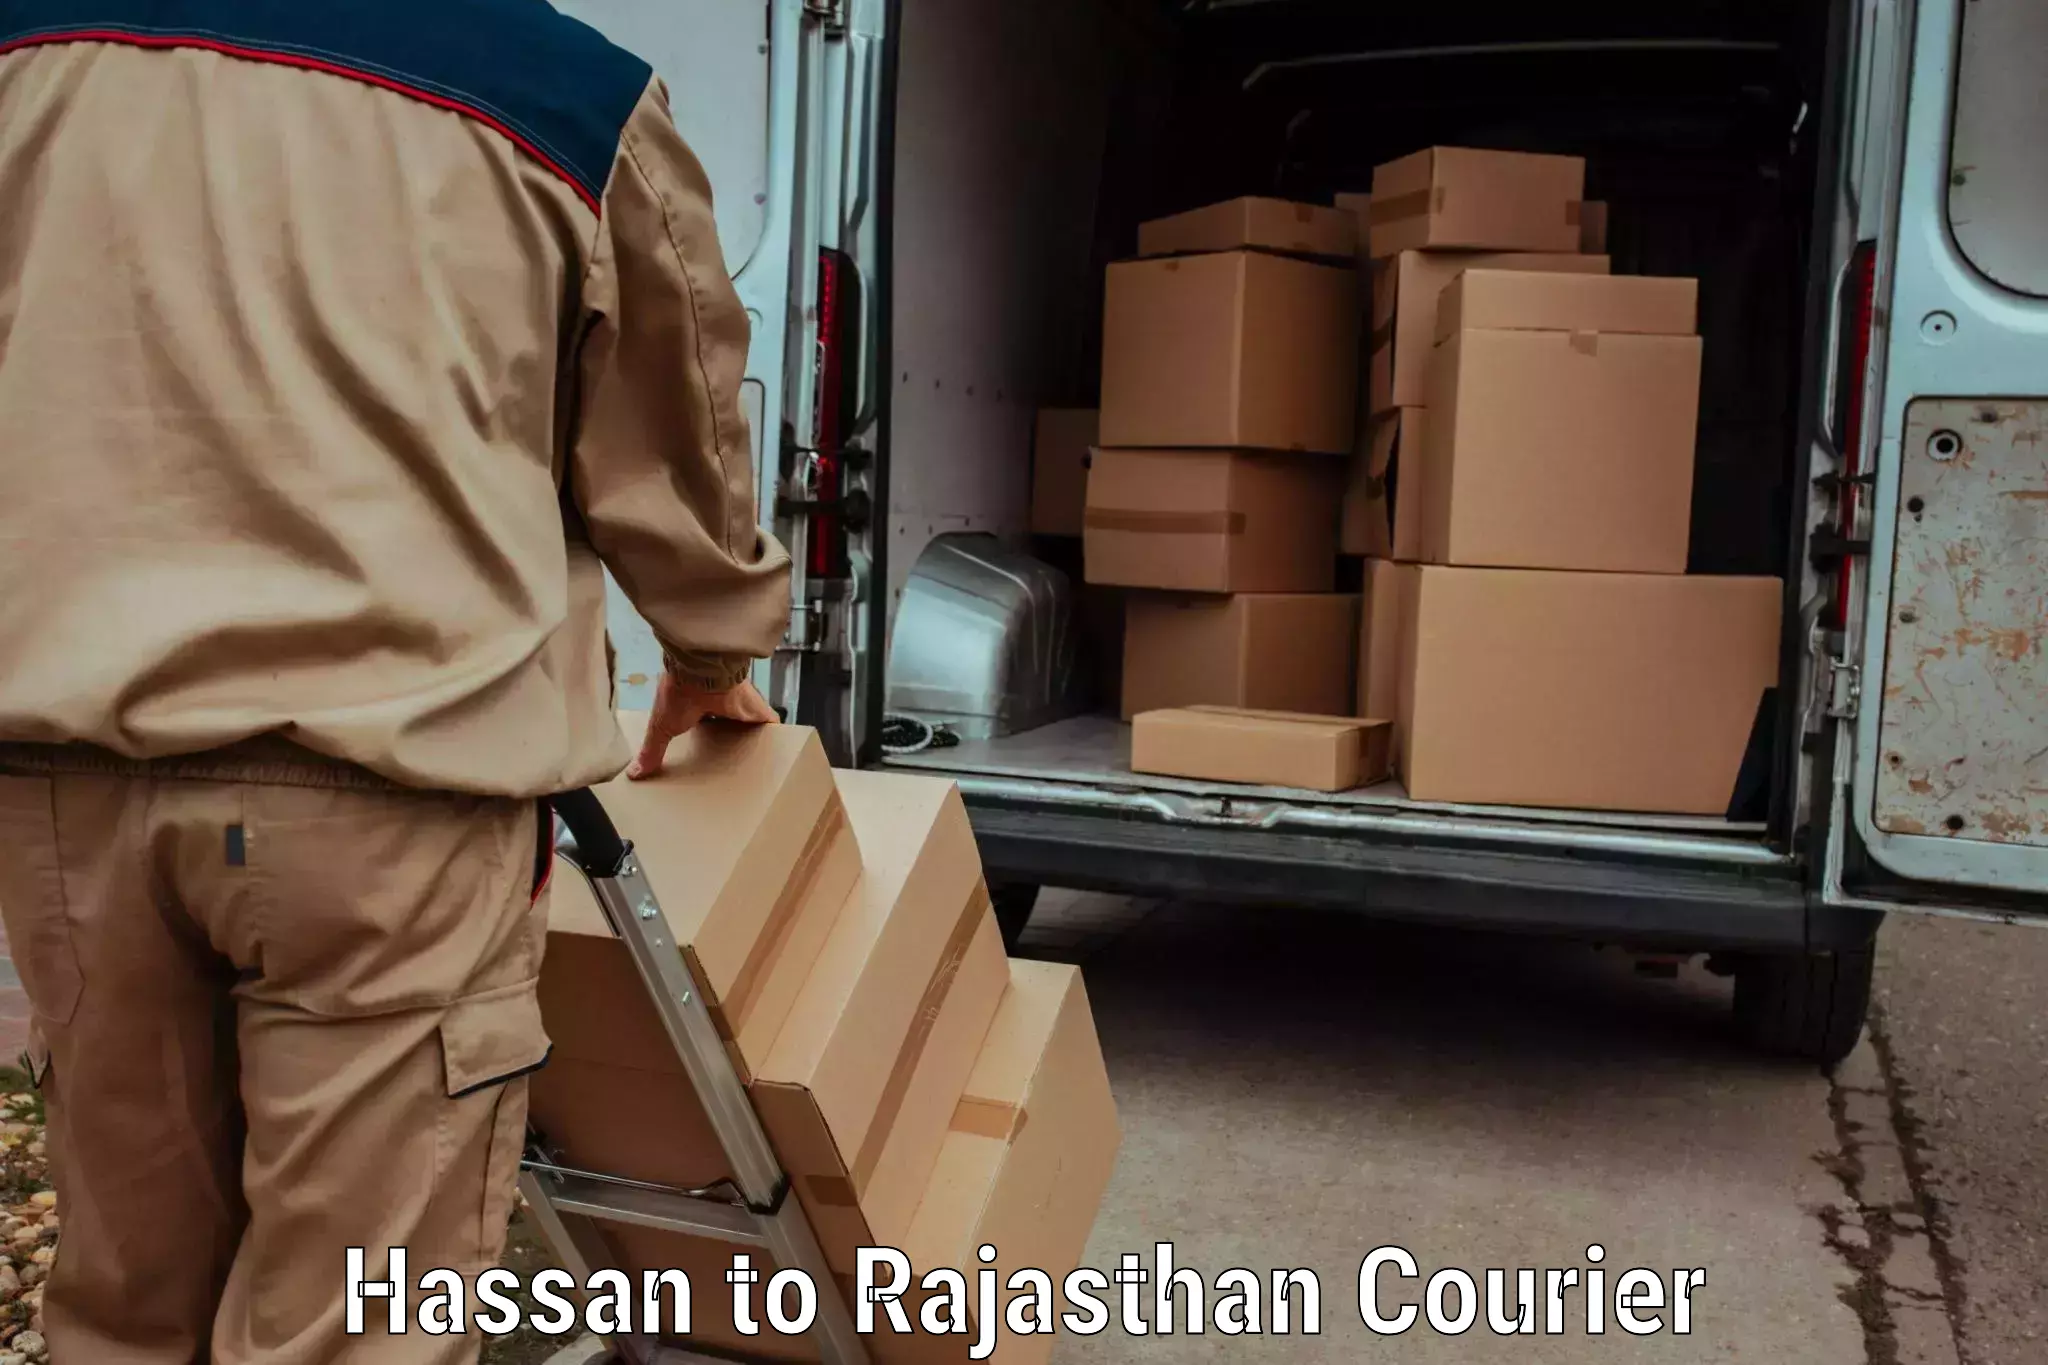 Lightweight courier Hassan to Bikaner